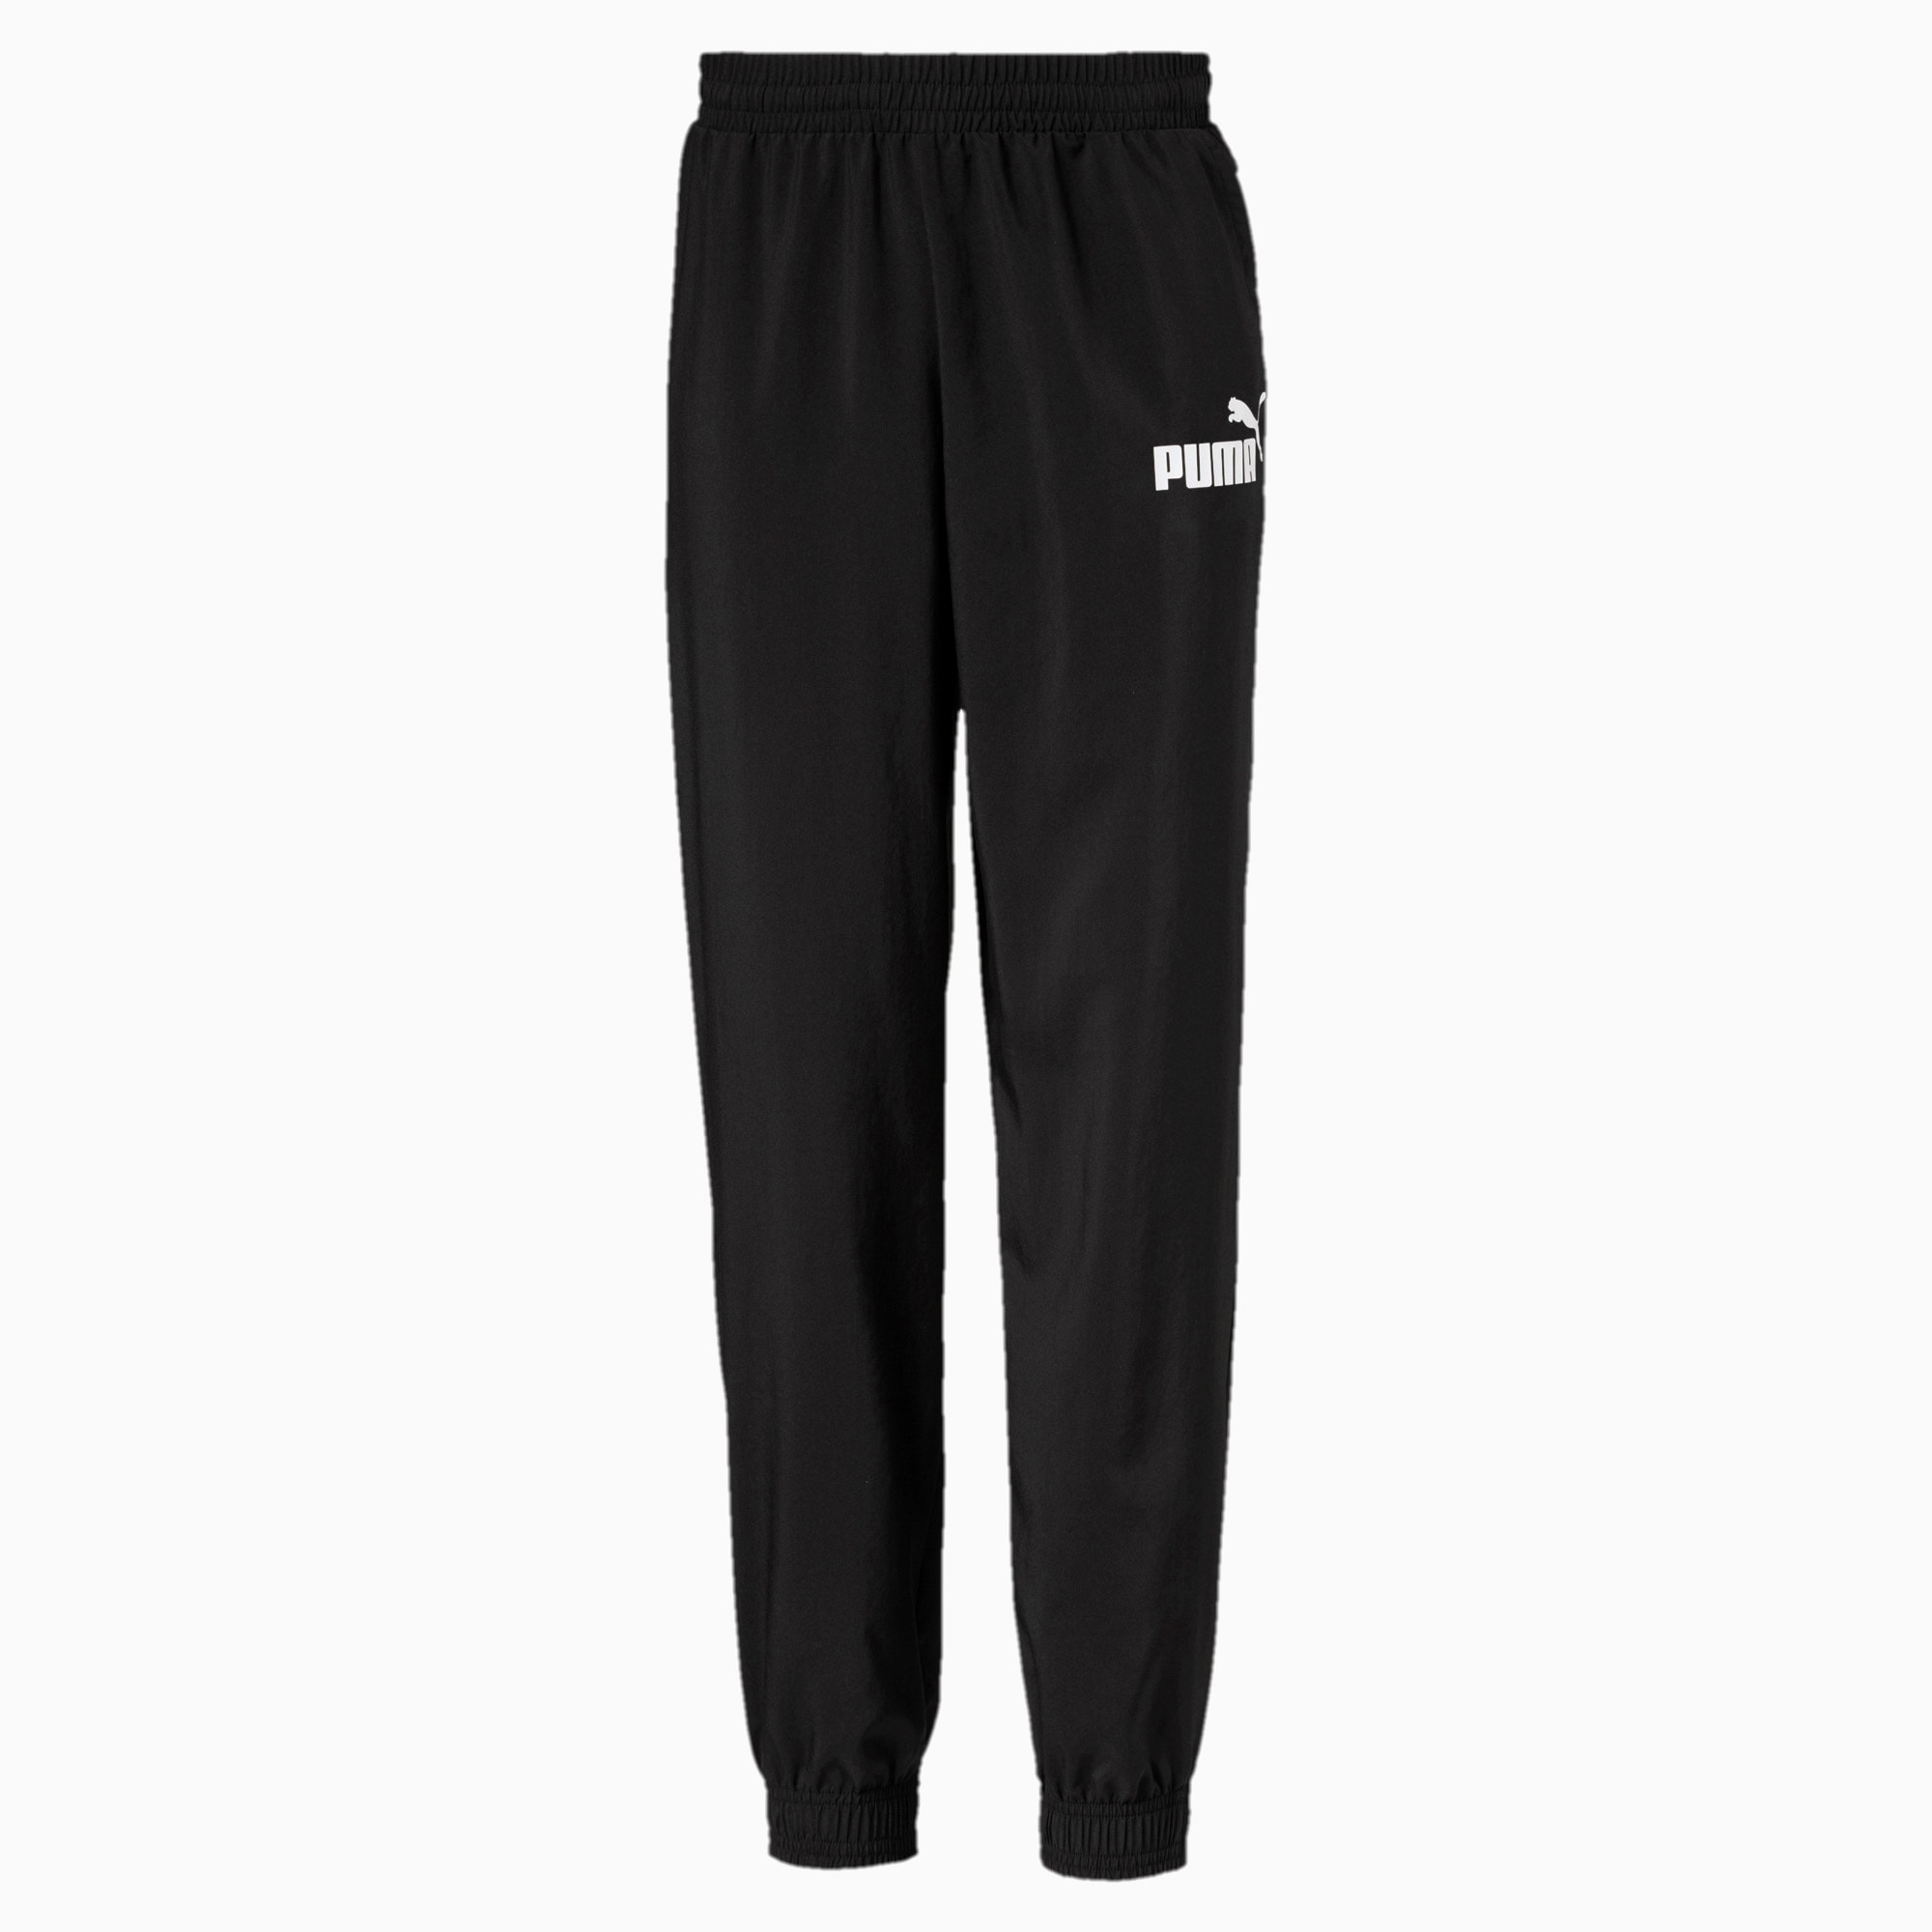 PUMA Pantalon de survêtement Essentials tissé pour garçon, Noir, Taille 176, Vêtements